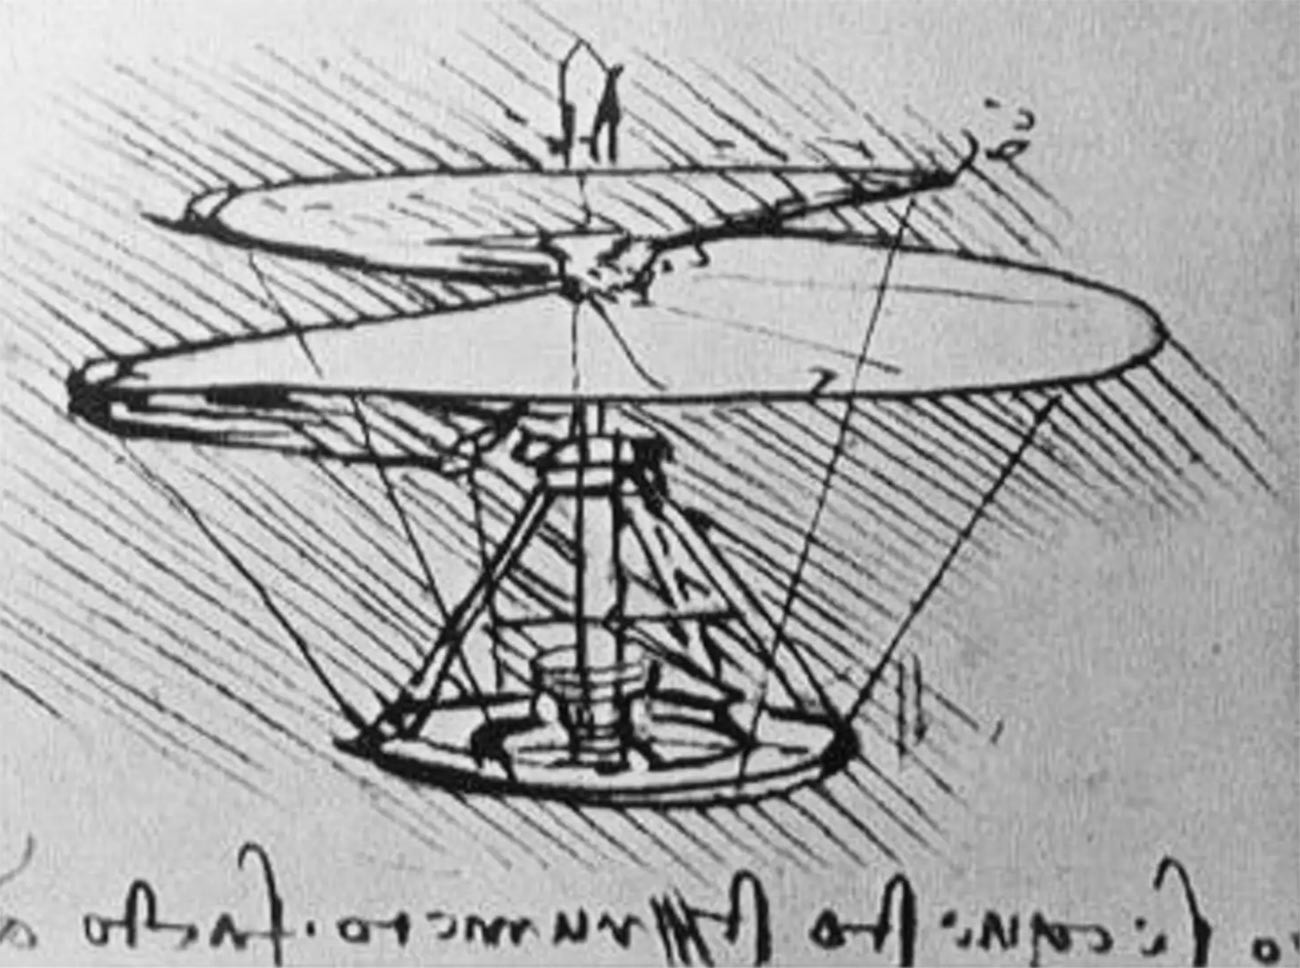 El prototipo de helicóptero de Leonardo da Vinci.
